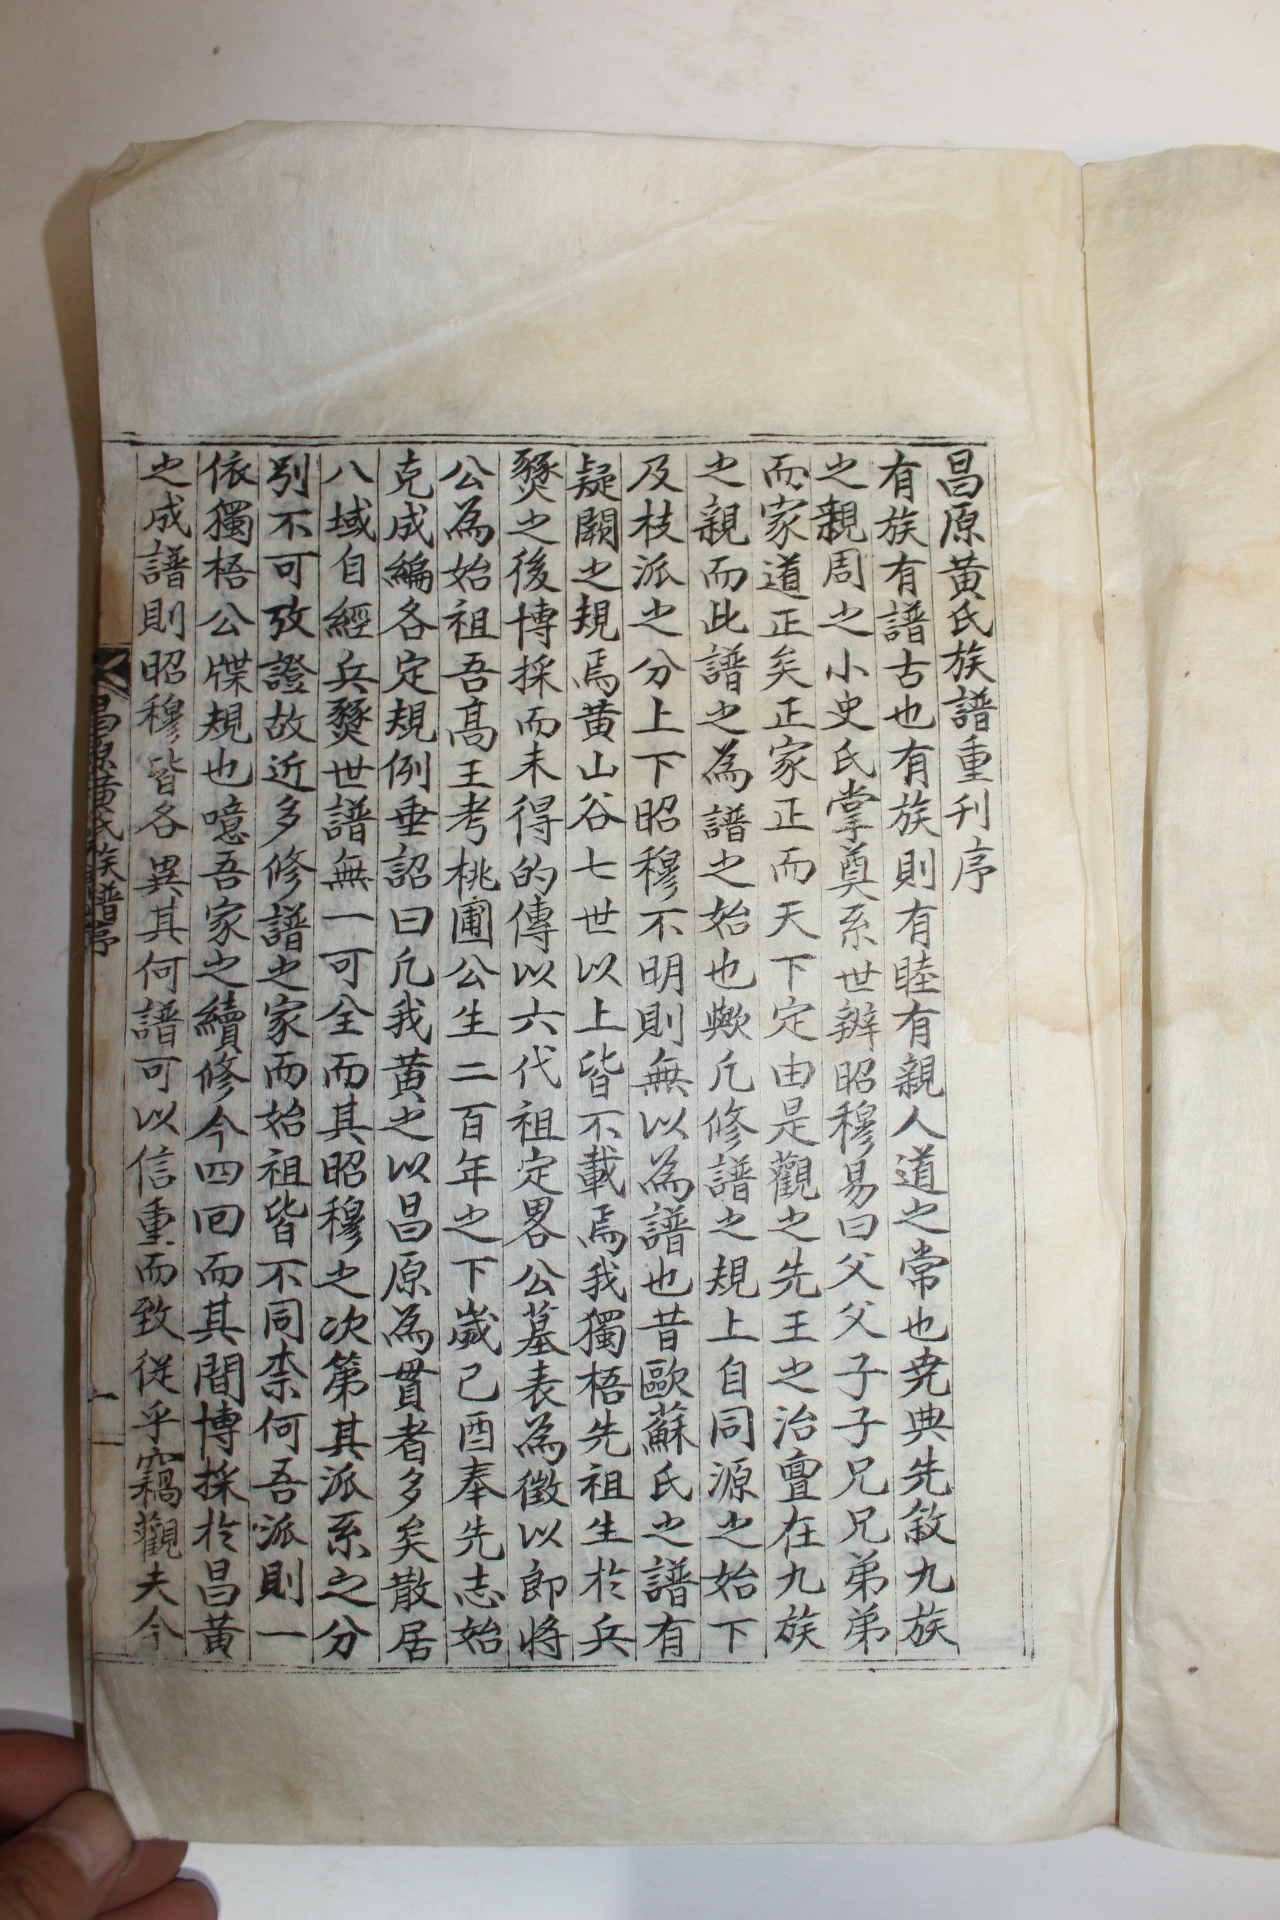 1957년 창원황씨족보(昌原黃氏族譜) 4책완질